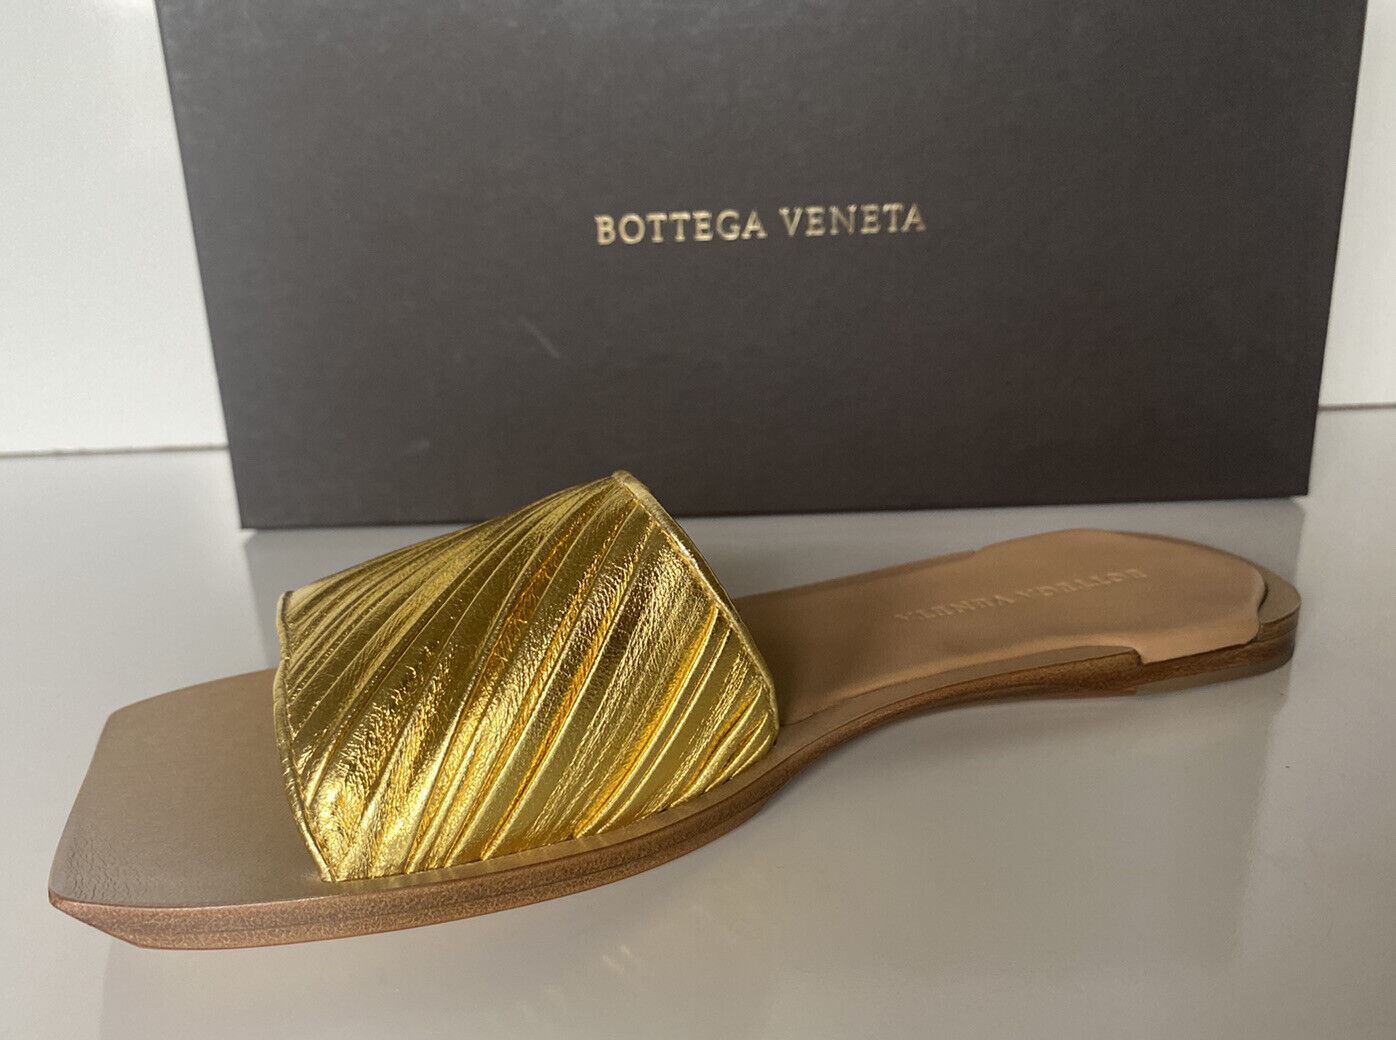 Женские кожаные сандалии без шнуровки Bottega Veneta 620 долларов США золотистого цвета 8 США (38 ЕС) 578409 